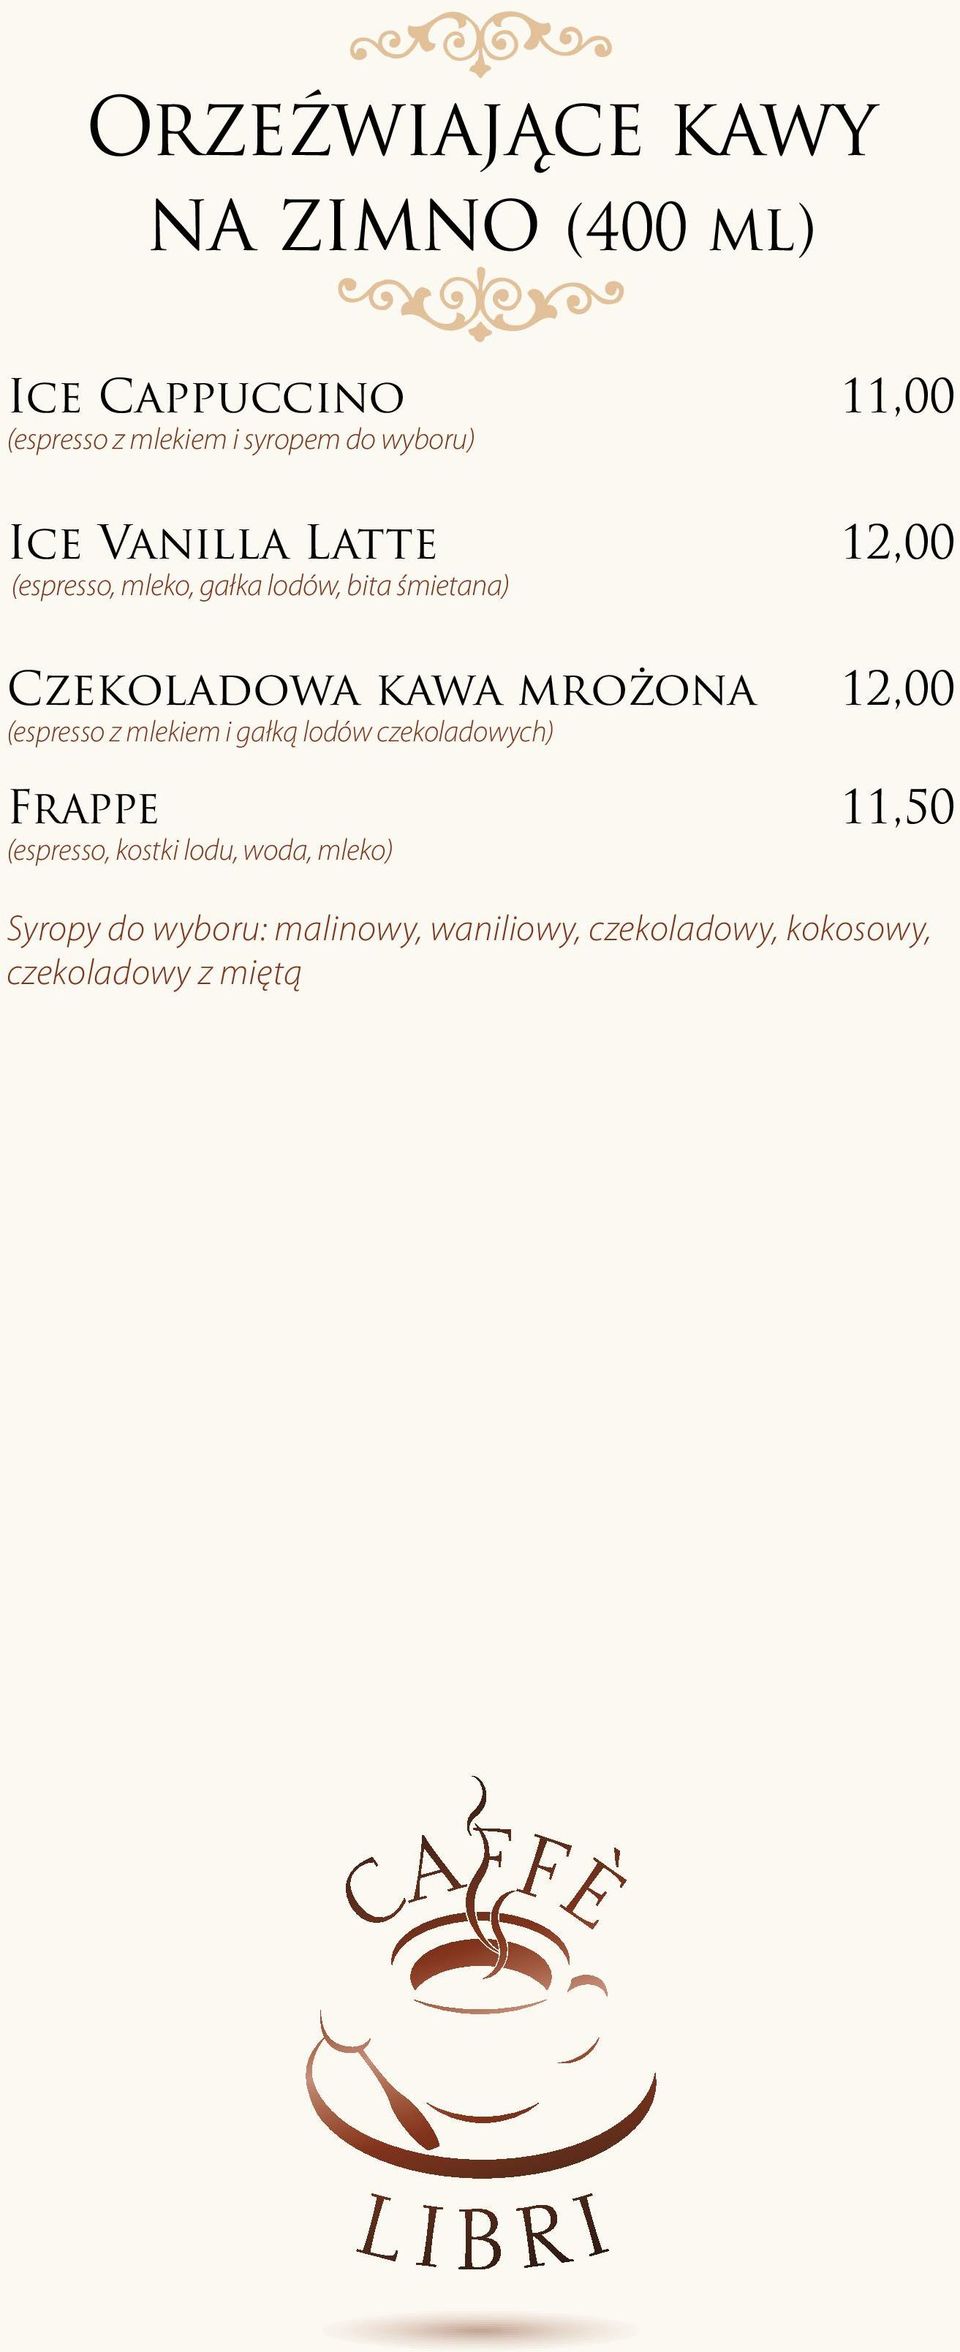 mrożona 12,00 (espresso z mlekiem i gałką lodów czekoladowych) Frappe 11,50 (espresso, kostki